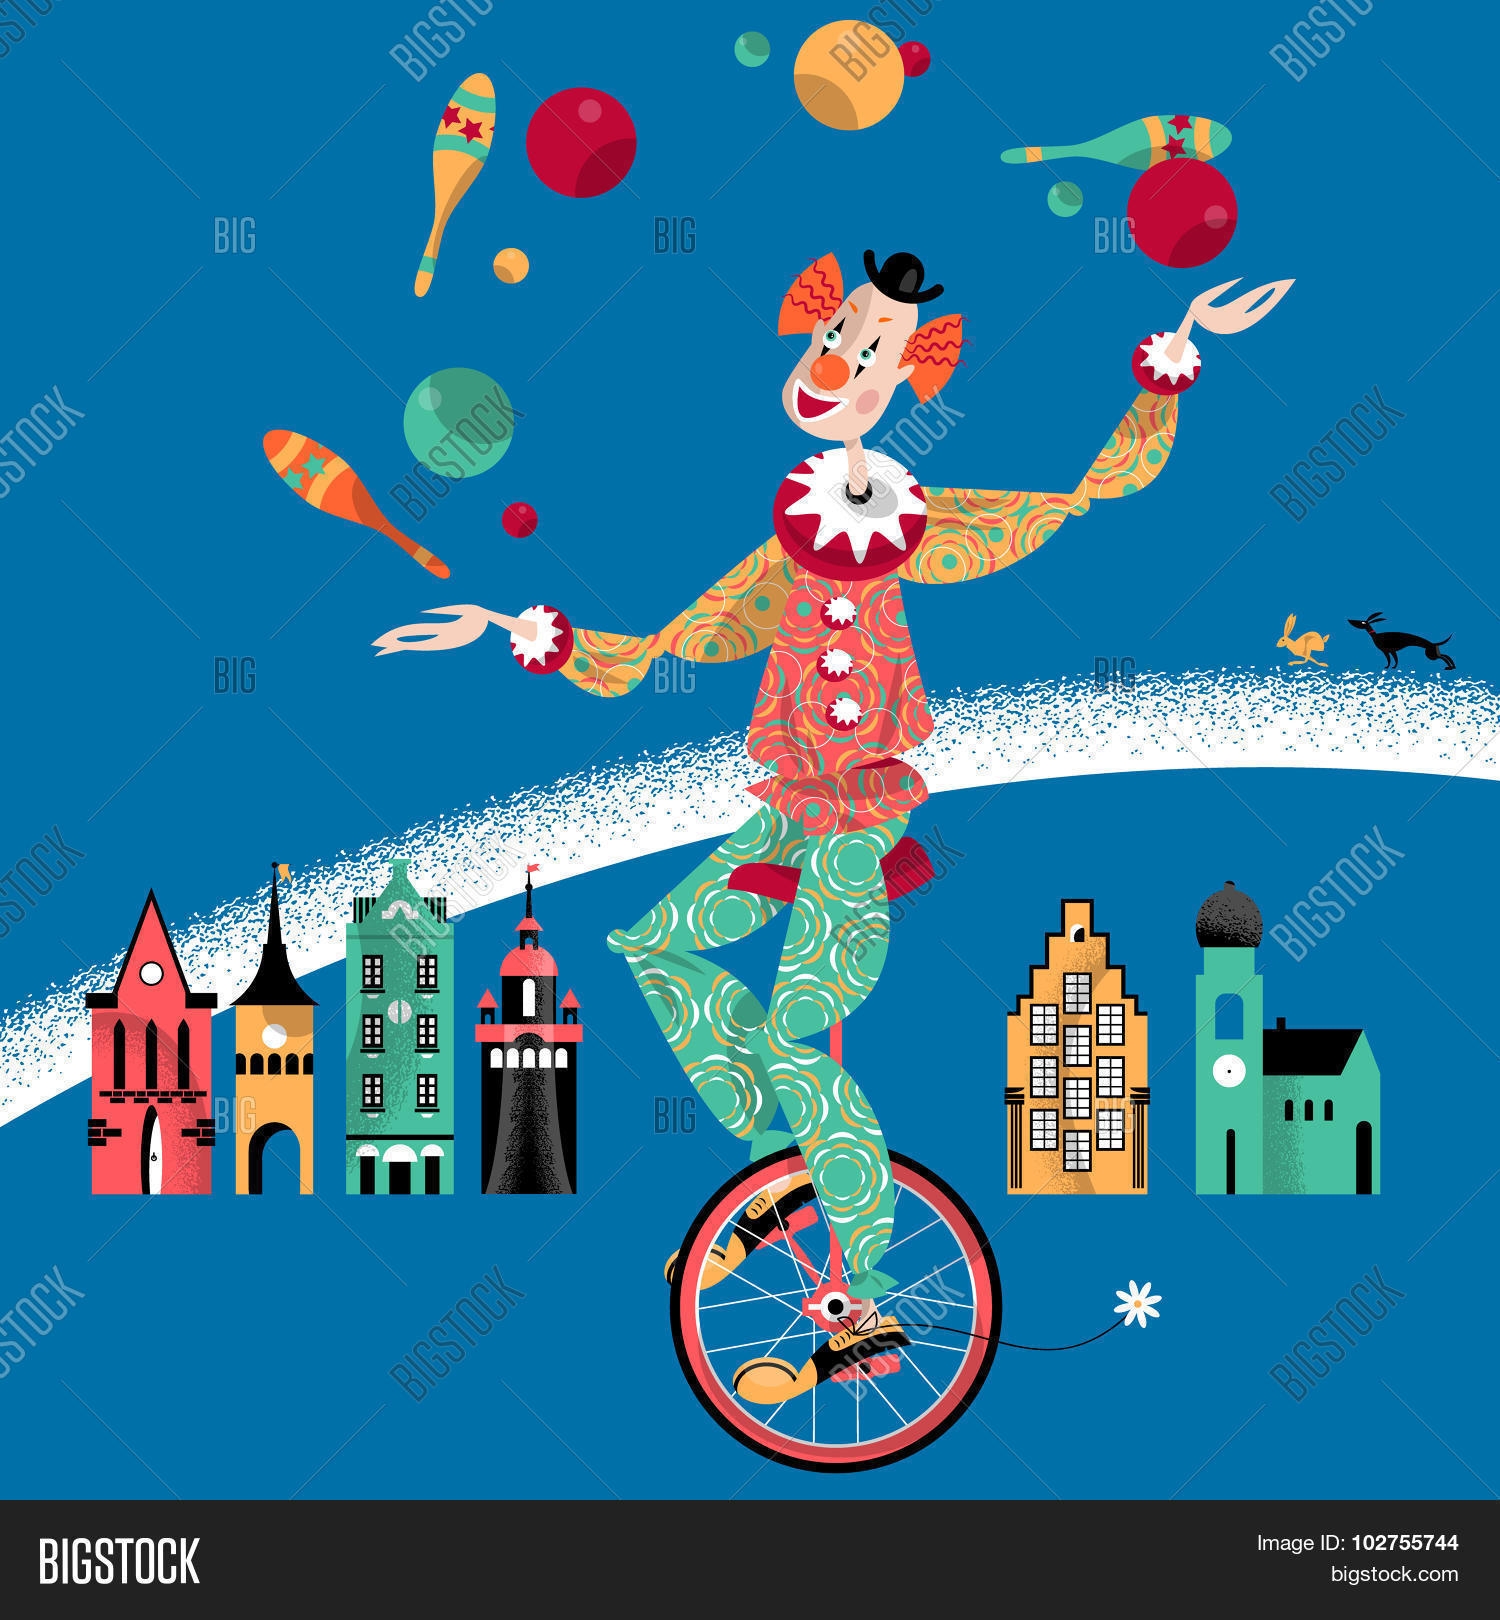 Жонглер клоун с велосипедом